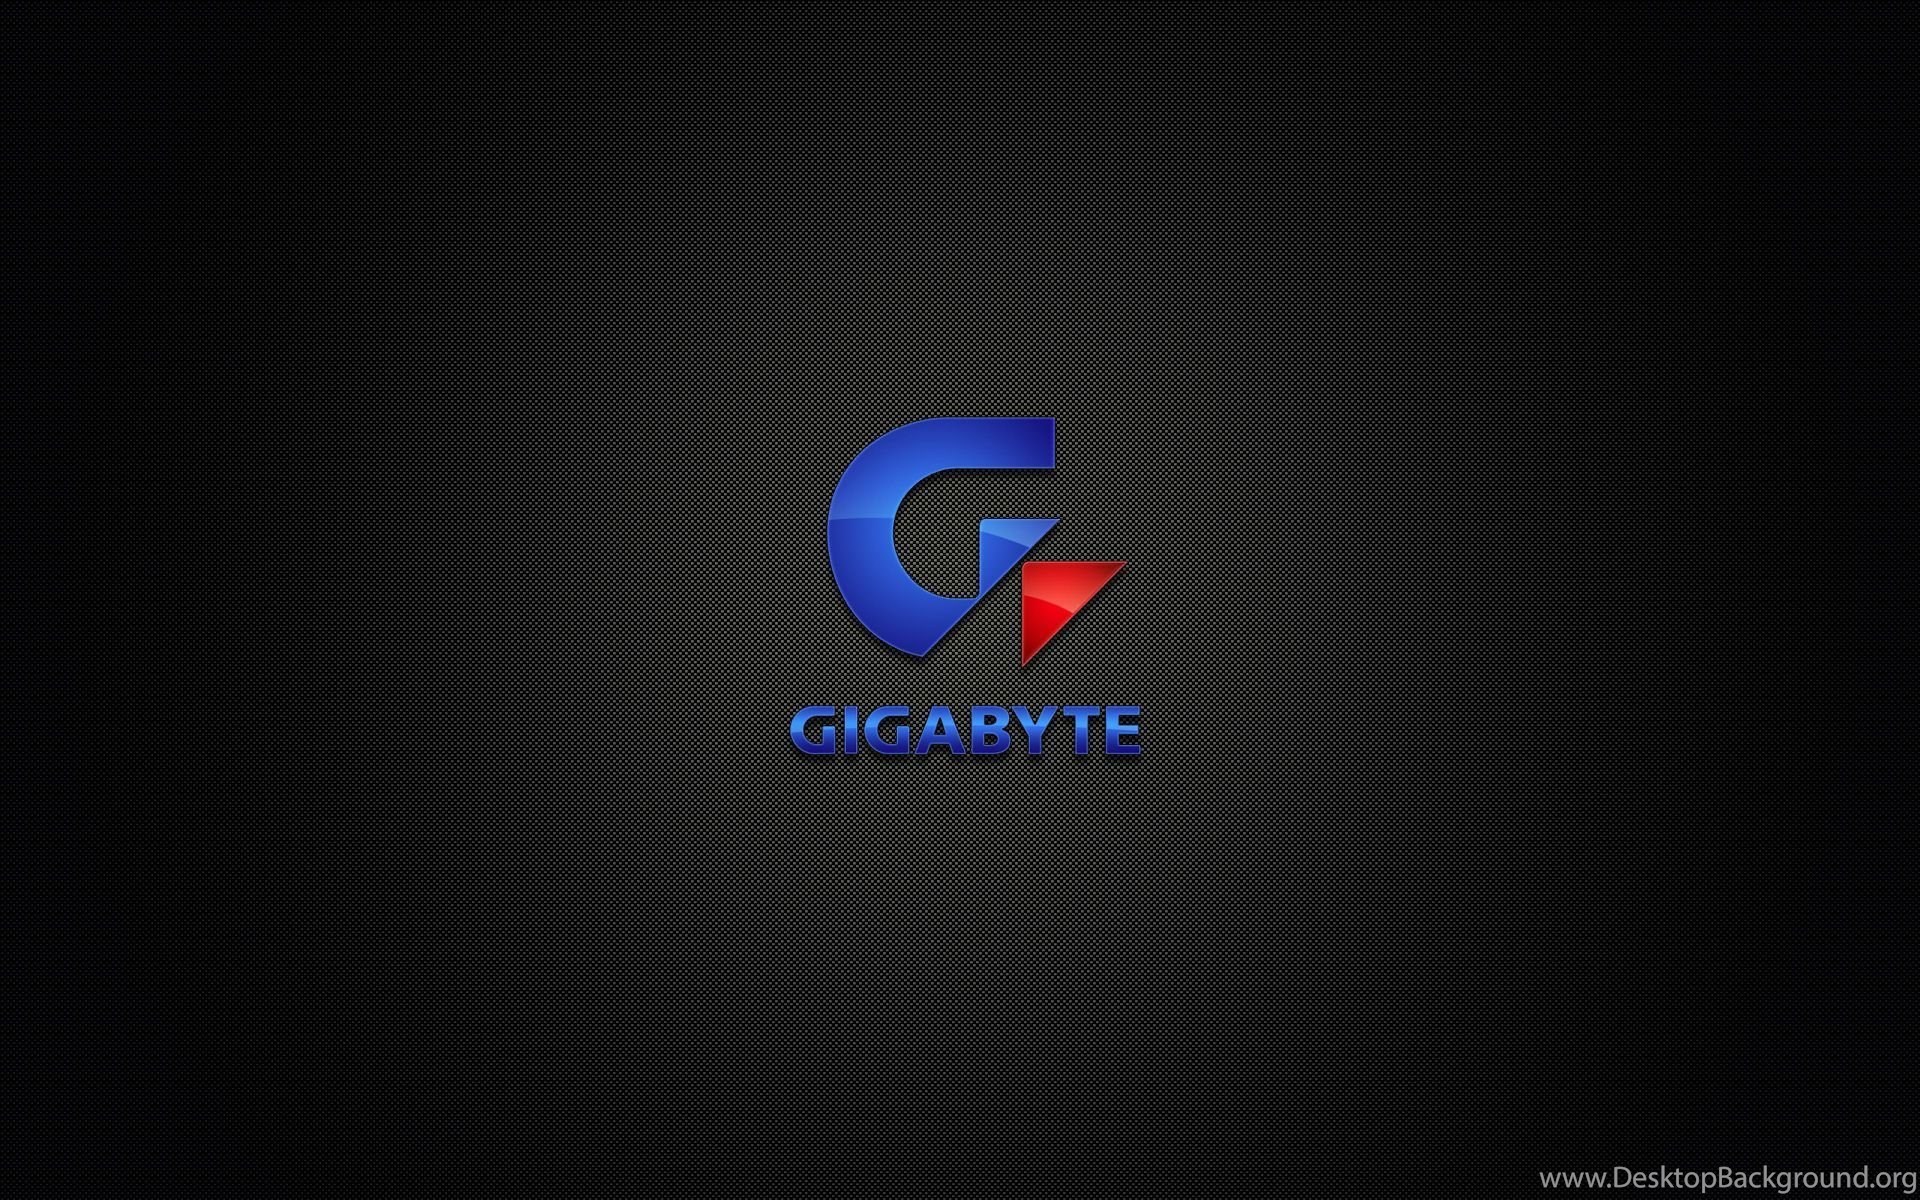 Gigabyte Logo On Black Background Wallpaper Jpg Desktop Background